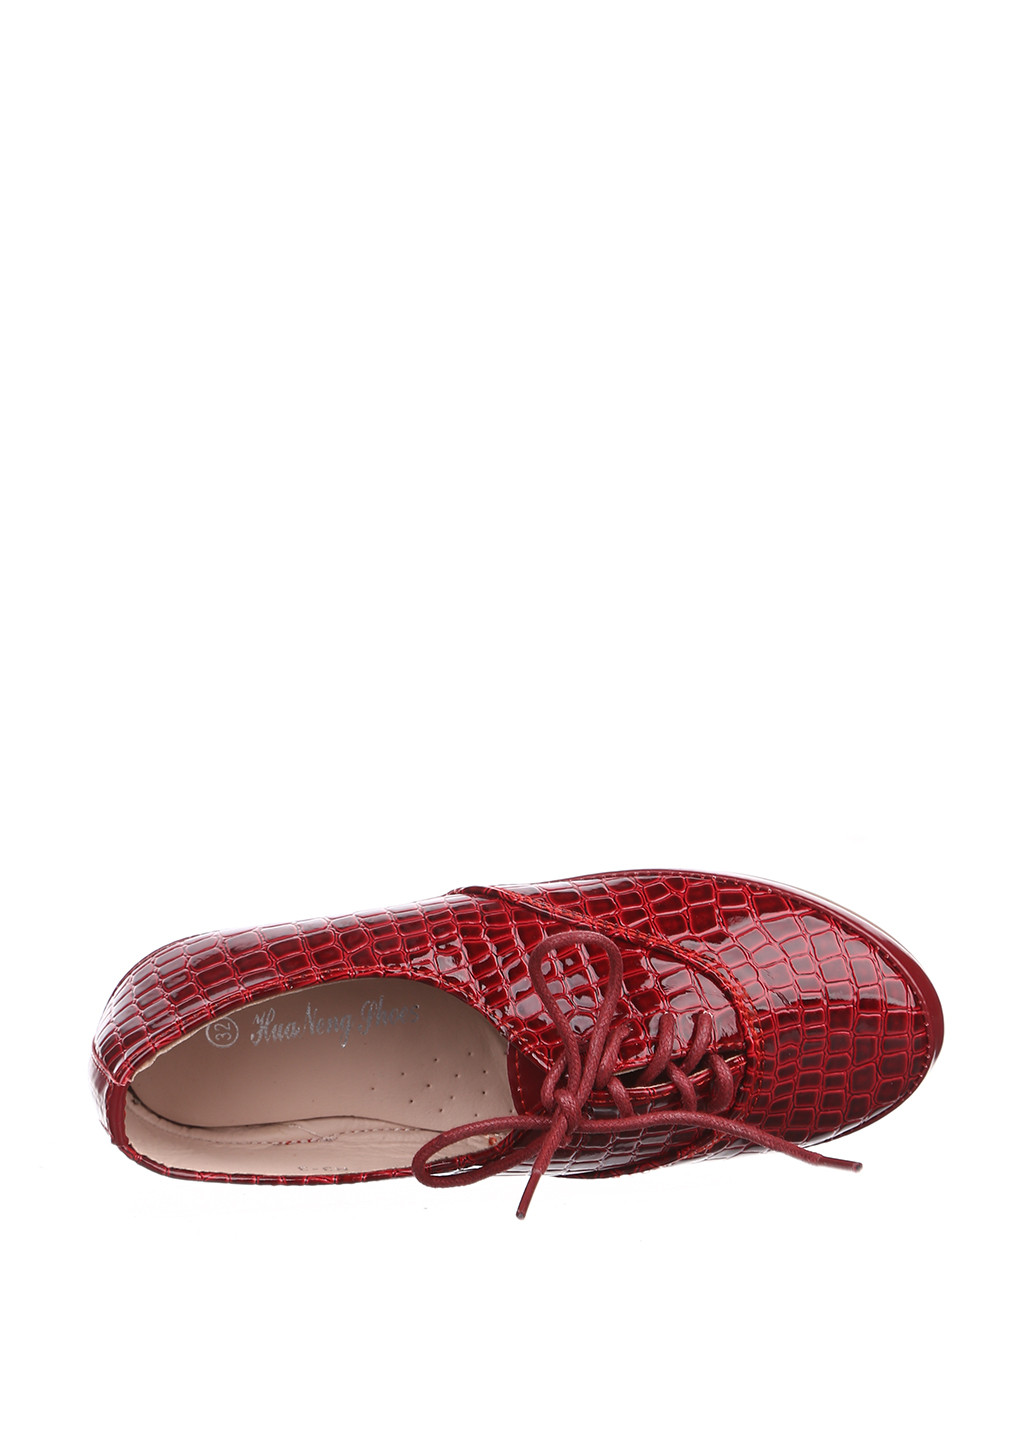 Красные туфли без каблука Hua Neng